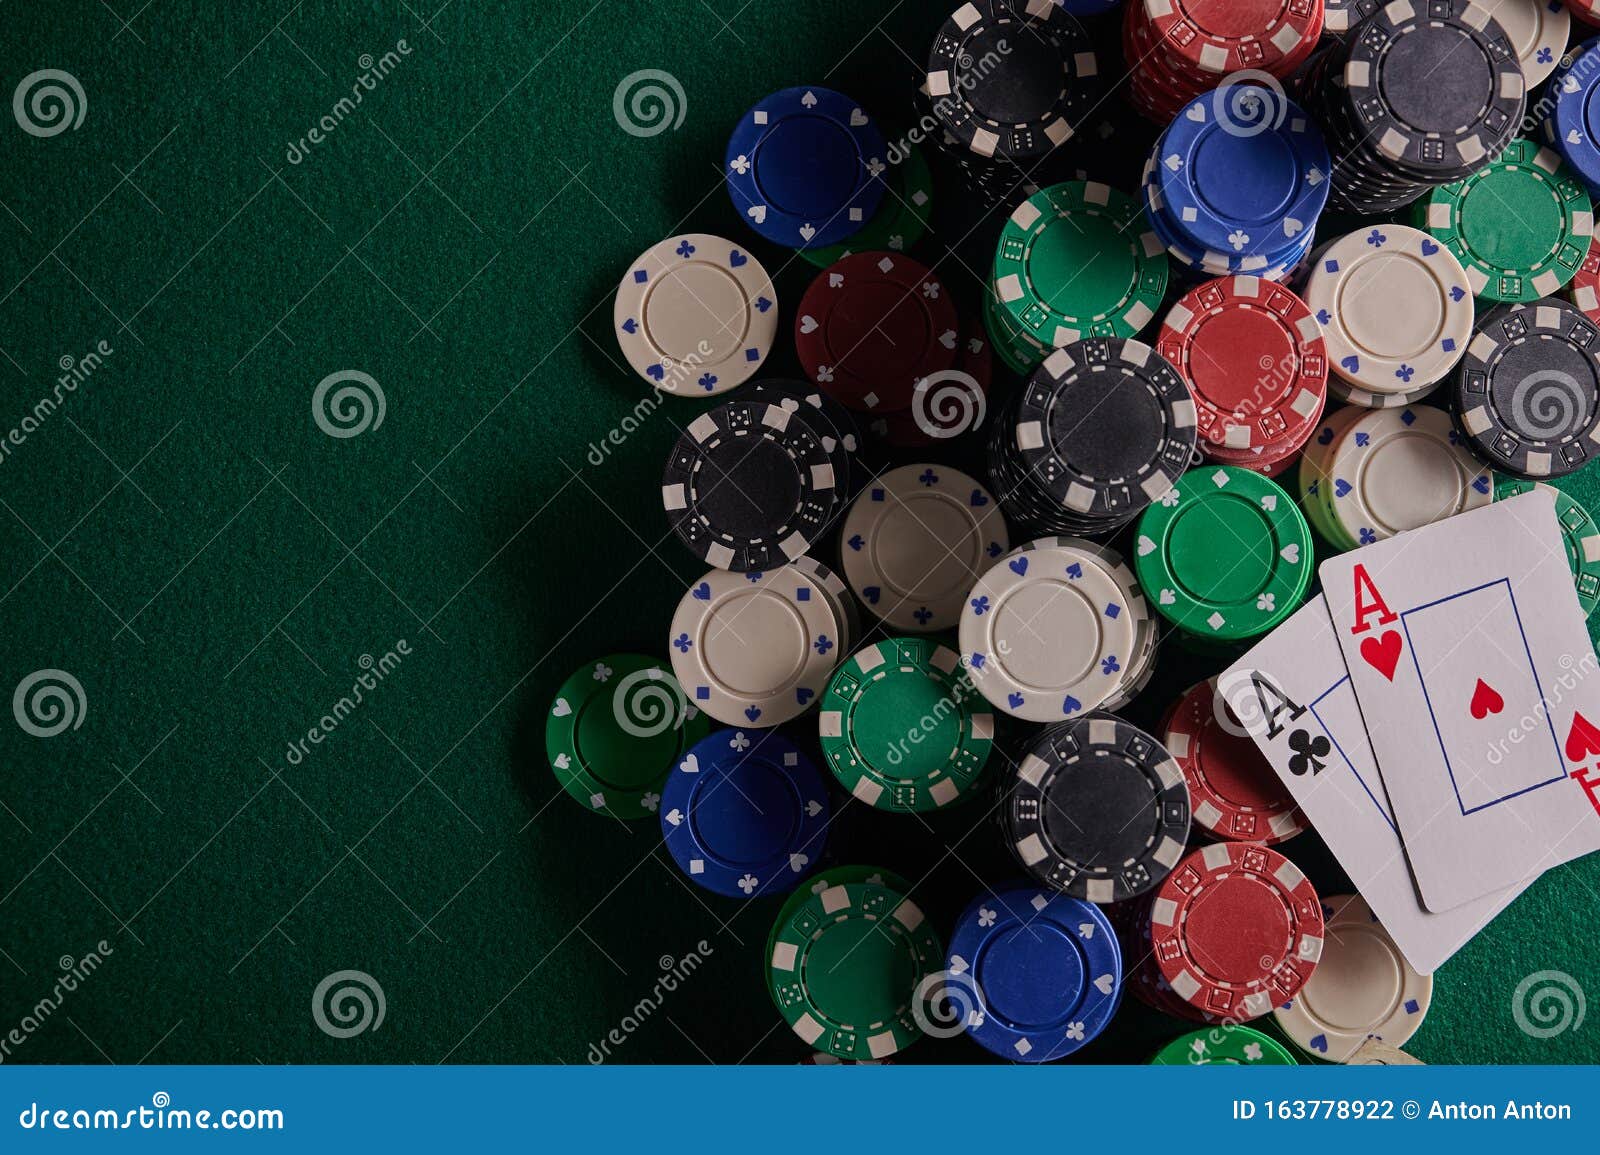 tigergaming poker